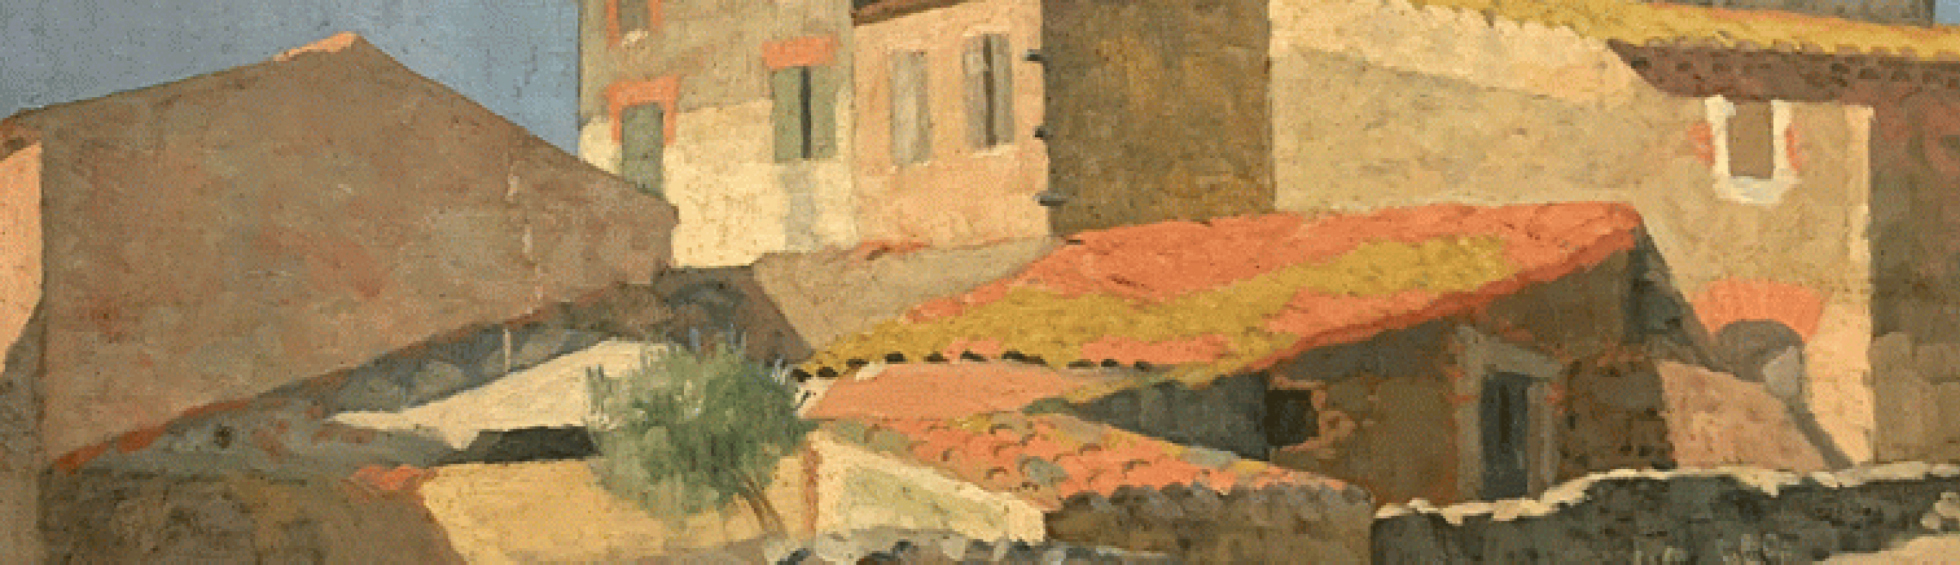 Aristide Maillol (1861-1944), Vue de mas, huile sur toile signée en bas à gauche, 46 x 55,5cm.